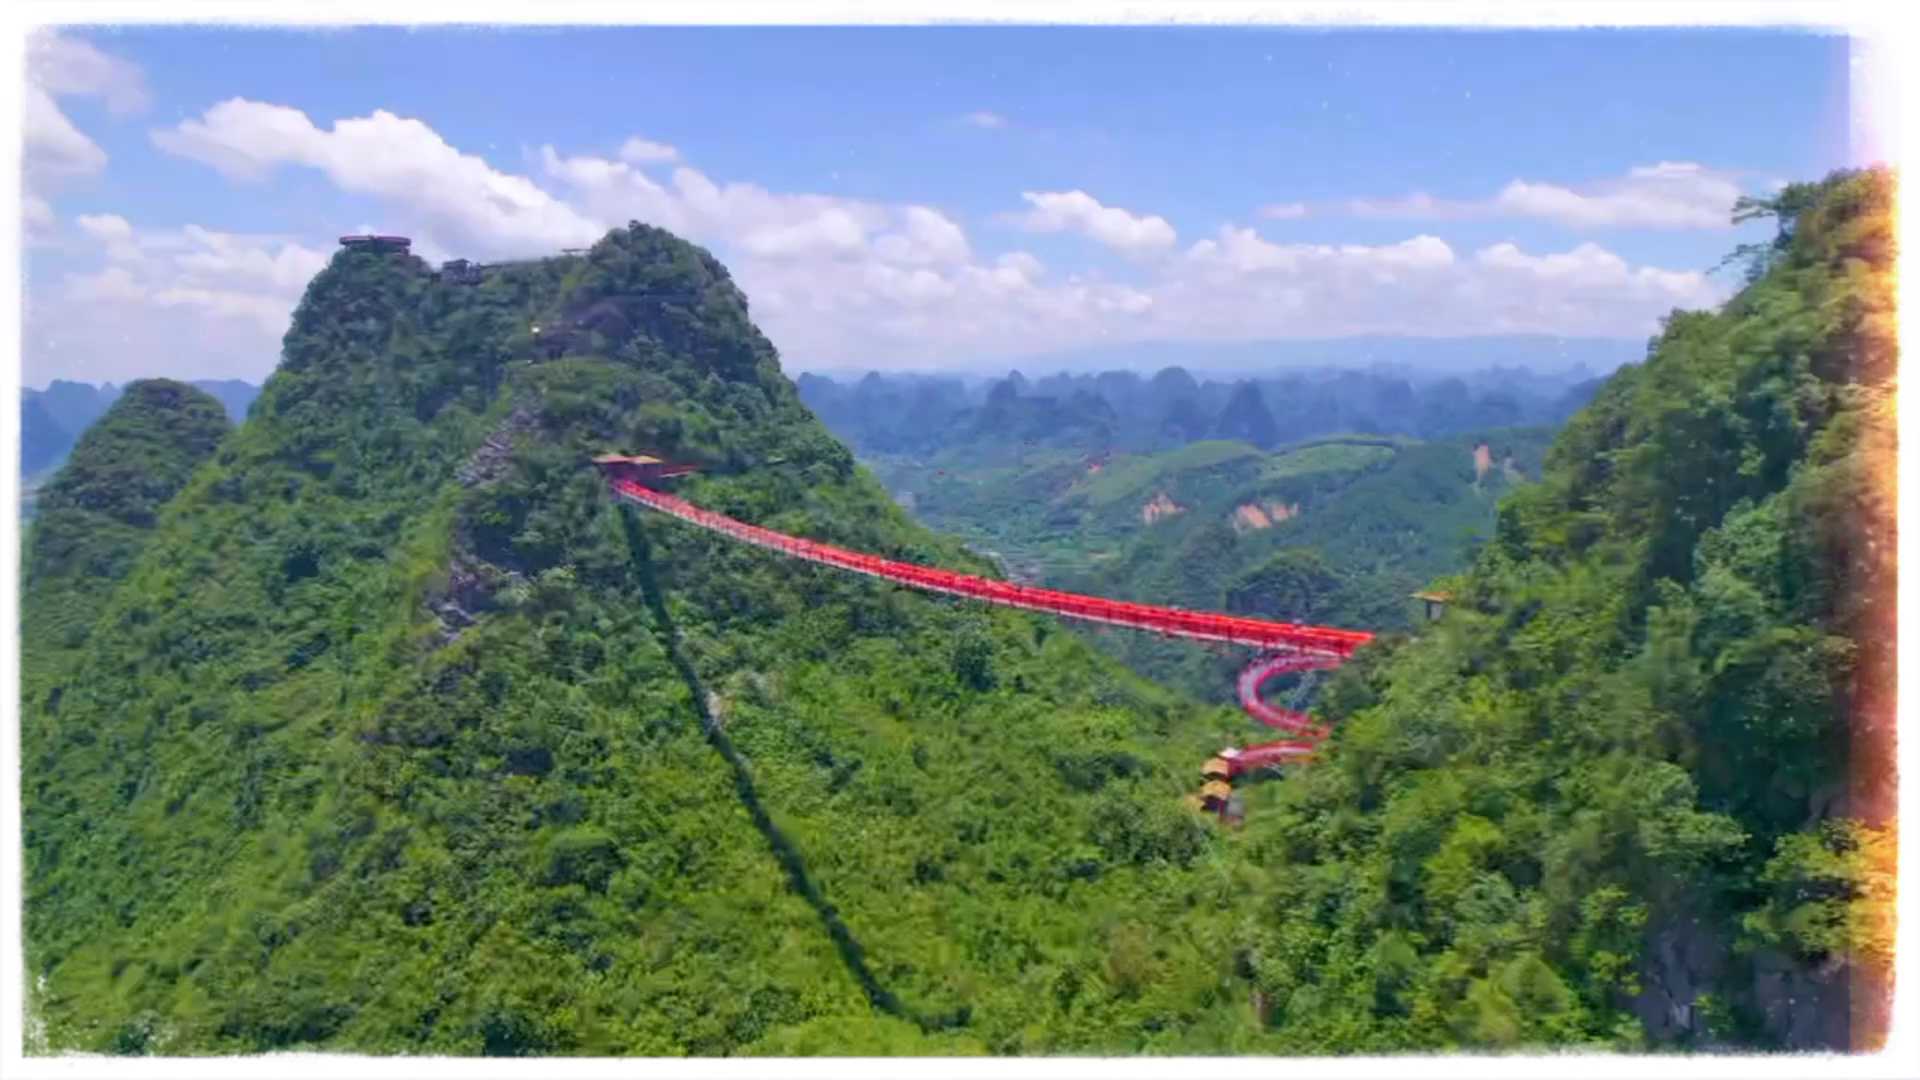 来桂林了就去一趟如意峰吧，敢走过这座索桥